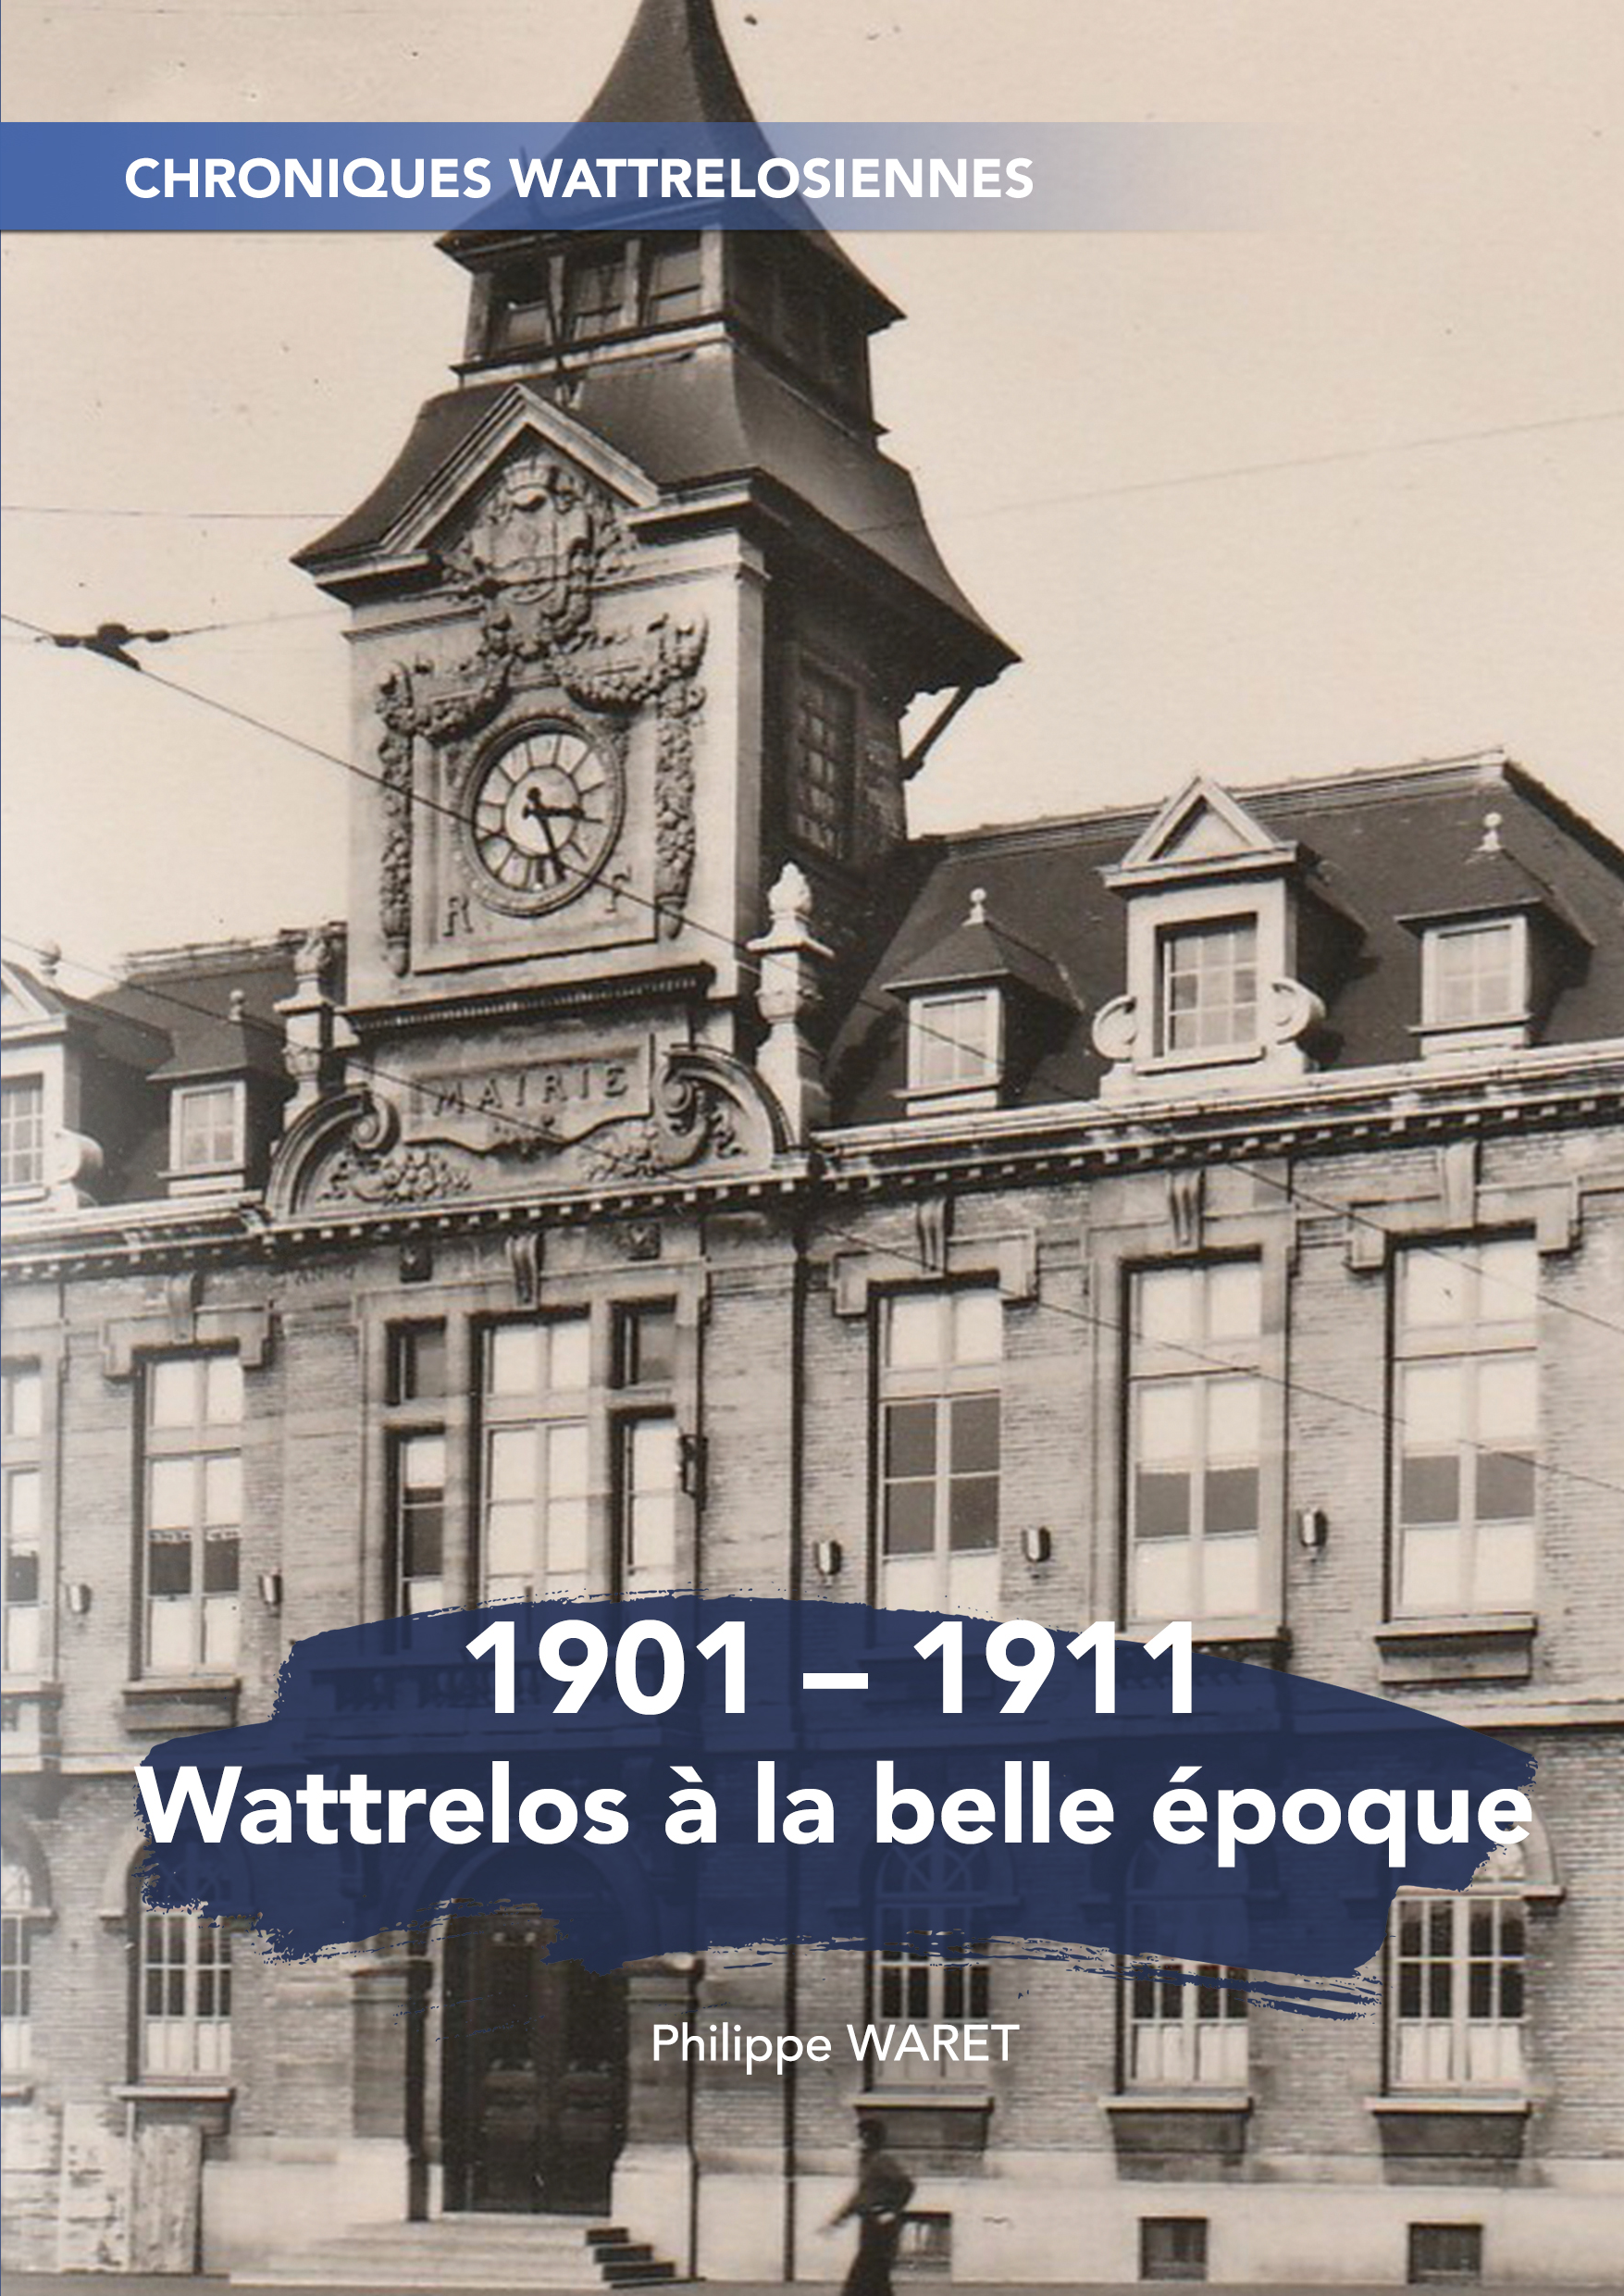 1901-1911 Wattrelos à la belle époque